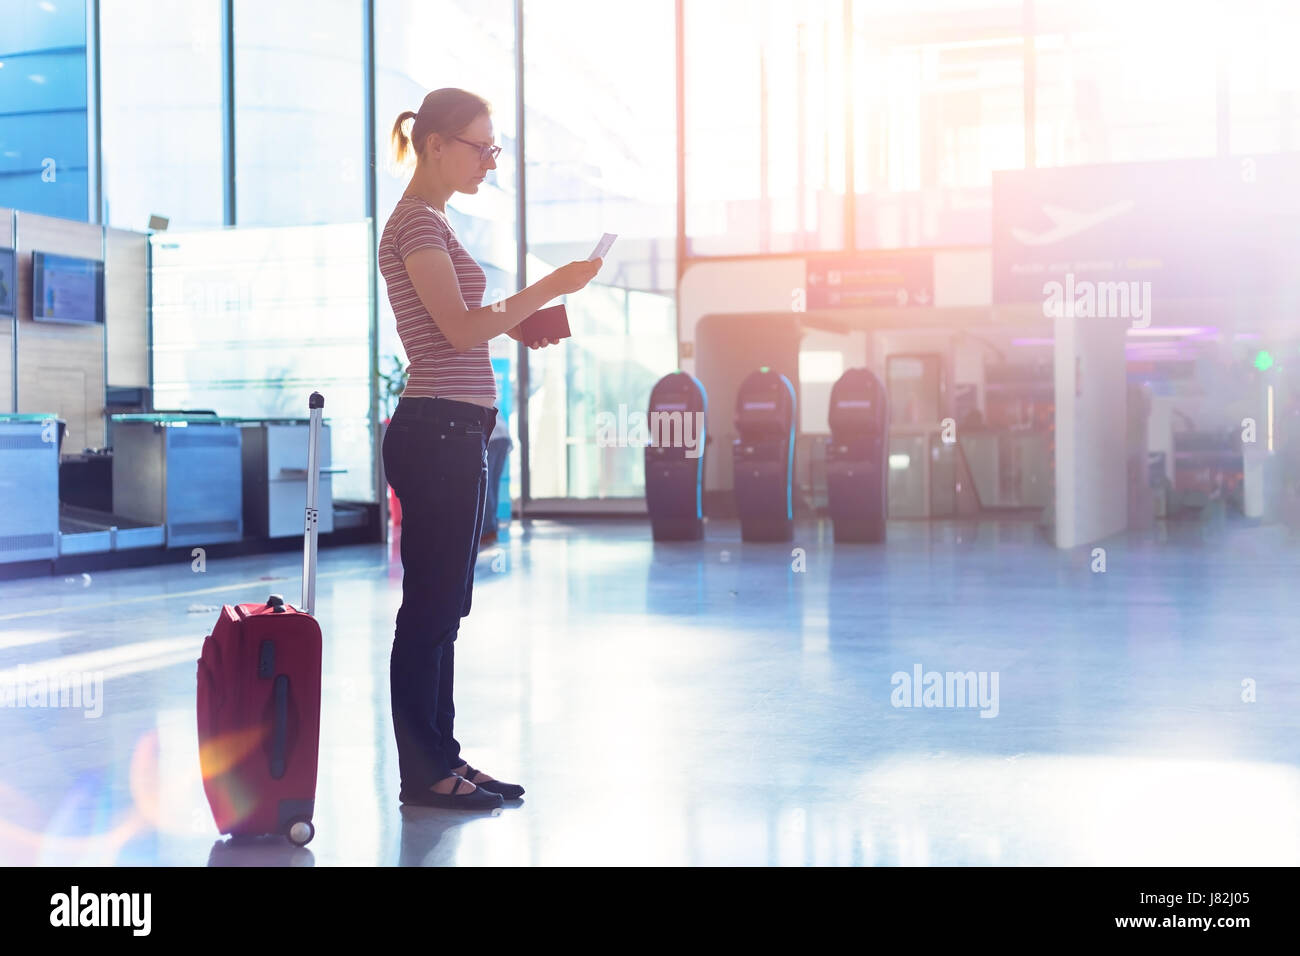 Persona volo di lettura carta d'imbarco e trattenendo il passaporto in mano in un aeroporto moderno terminale check-in hall, documenti di viaggio Foto Stock